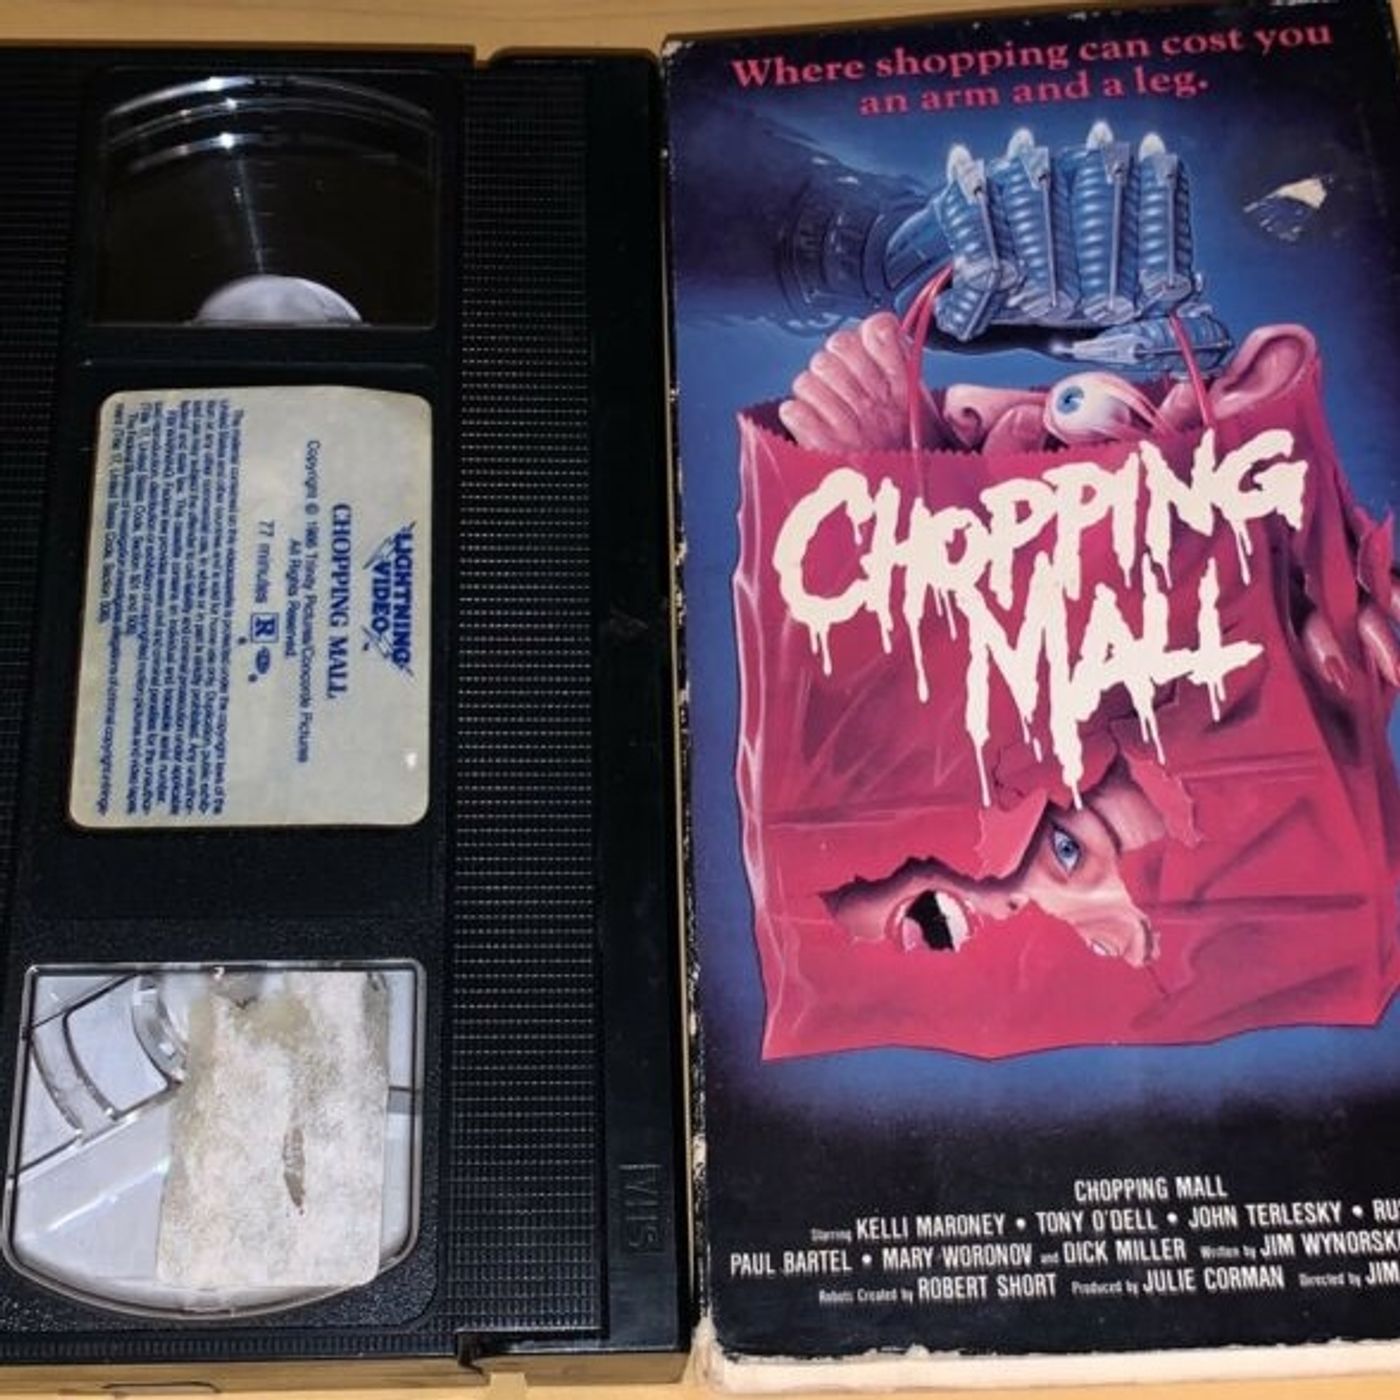 1986 - Chopping Mall Image